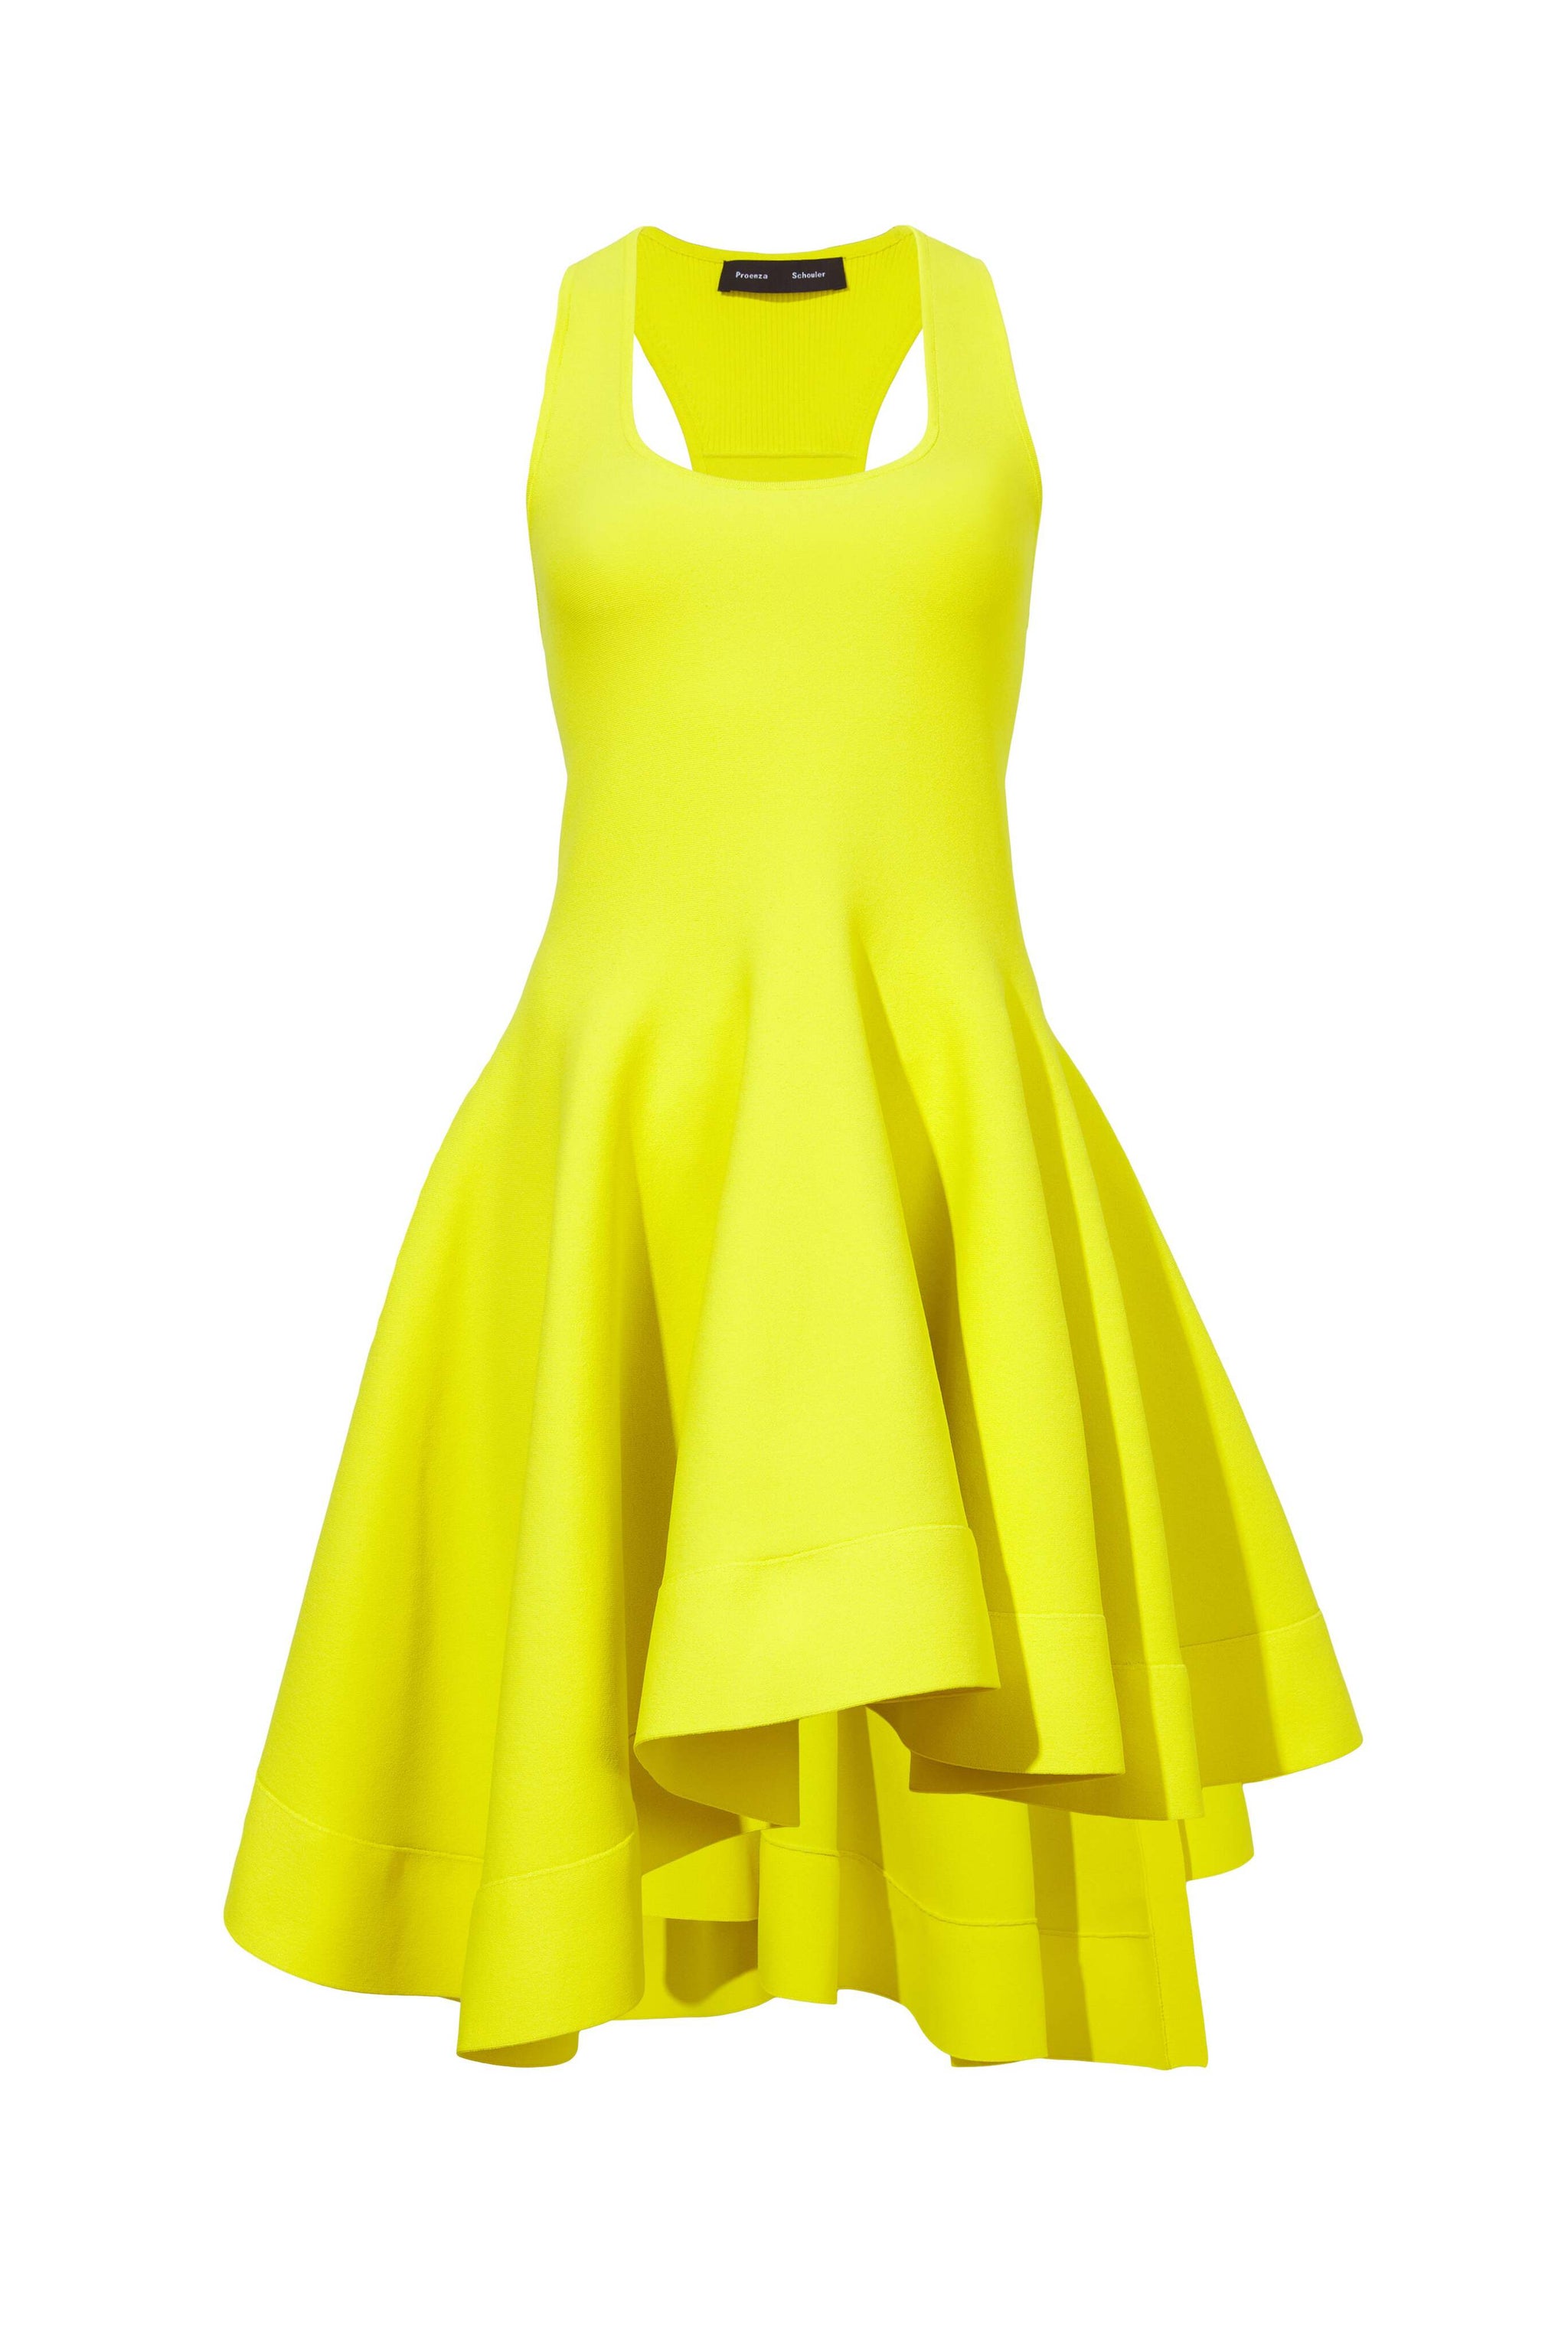 Diotima Sade Knit Crystal Dress